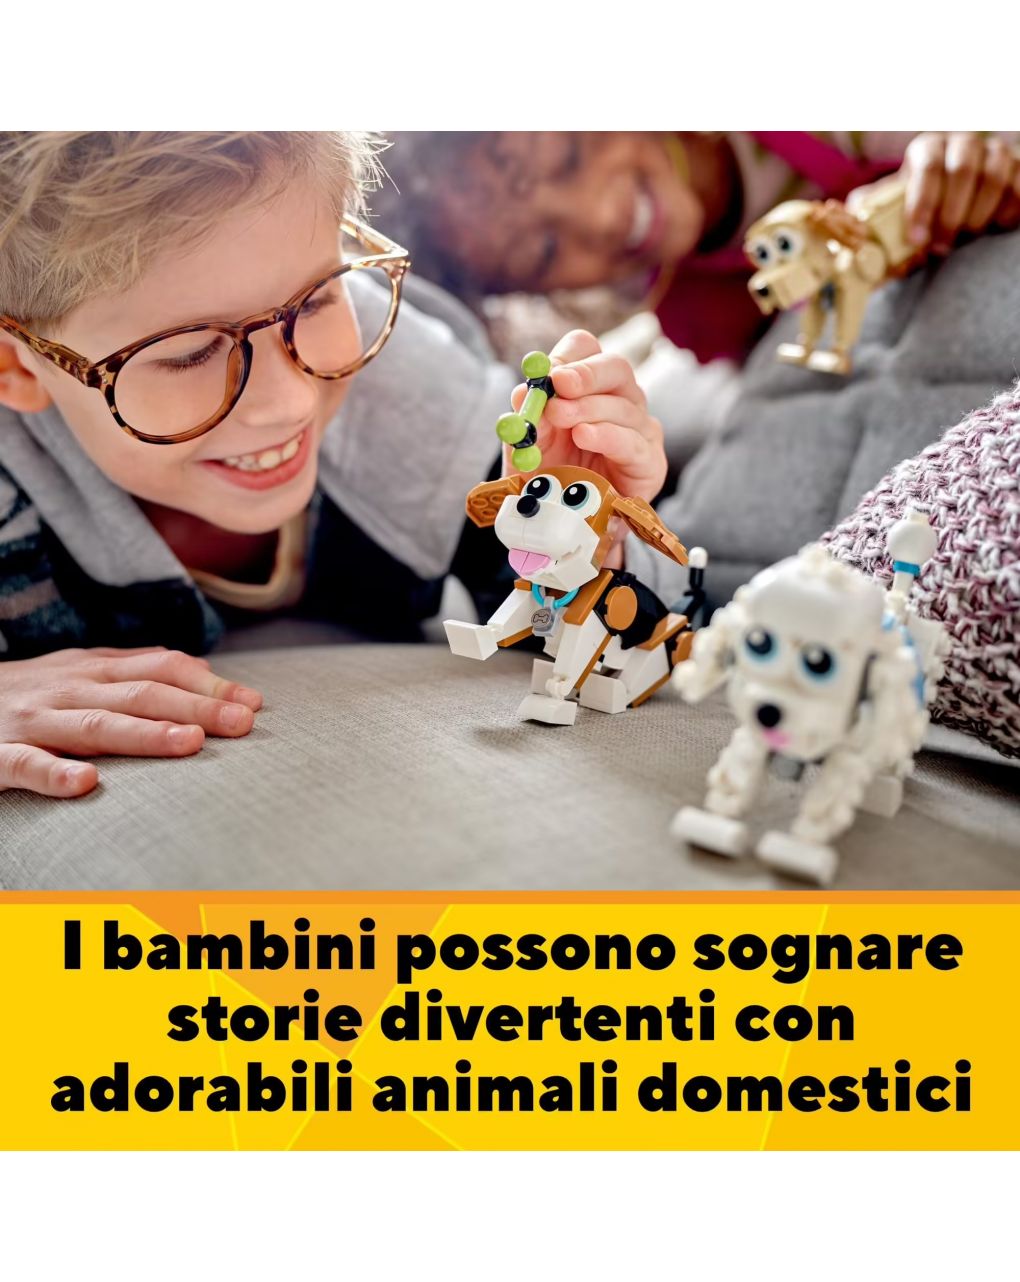 Adorabili cagnolini set 3 in 1 con bassotto carlino barboncino + altri animali da costruire - lego creator - LEGO